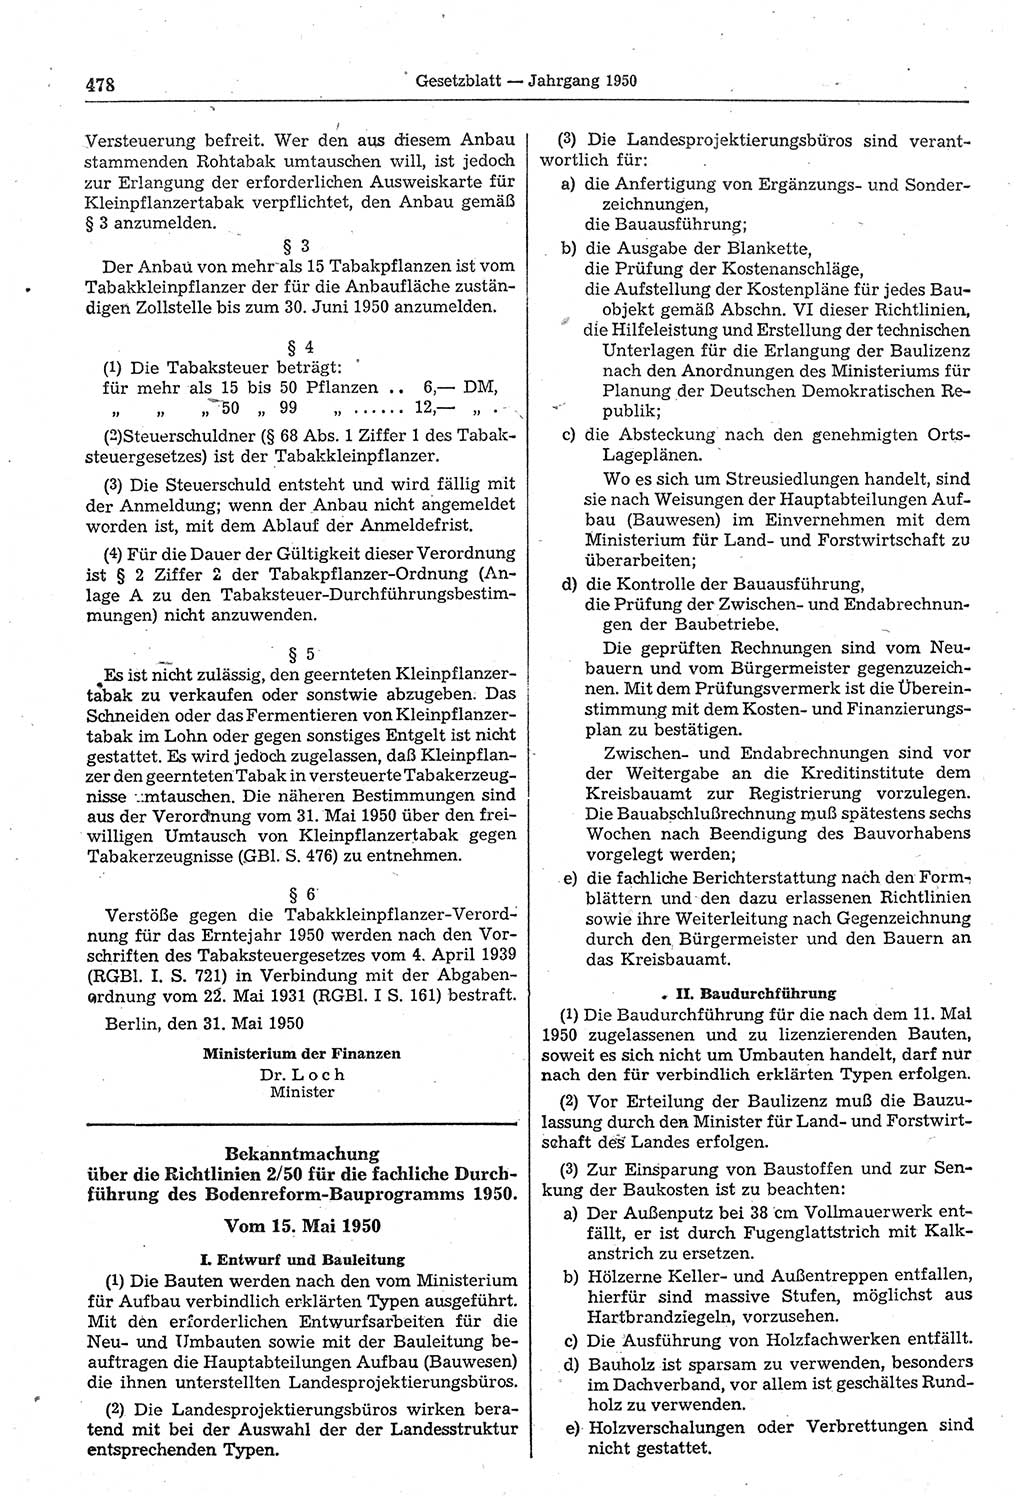 Gesetzblatt (GBl.) der Deutschen Demokratischen Republik (DDR) 1950, Seite 478 (GBl. DDR 1950, S. 478)